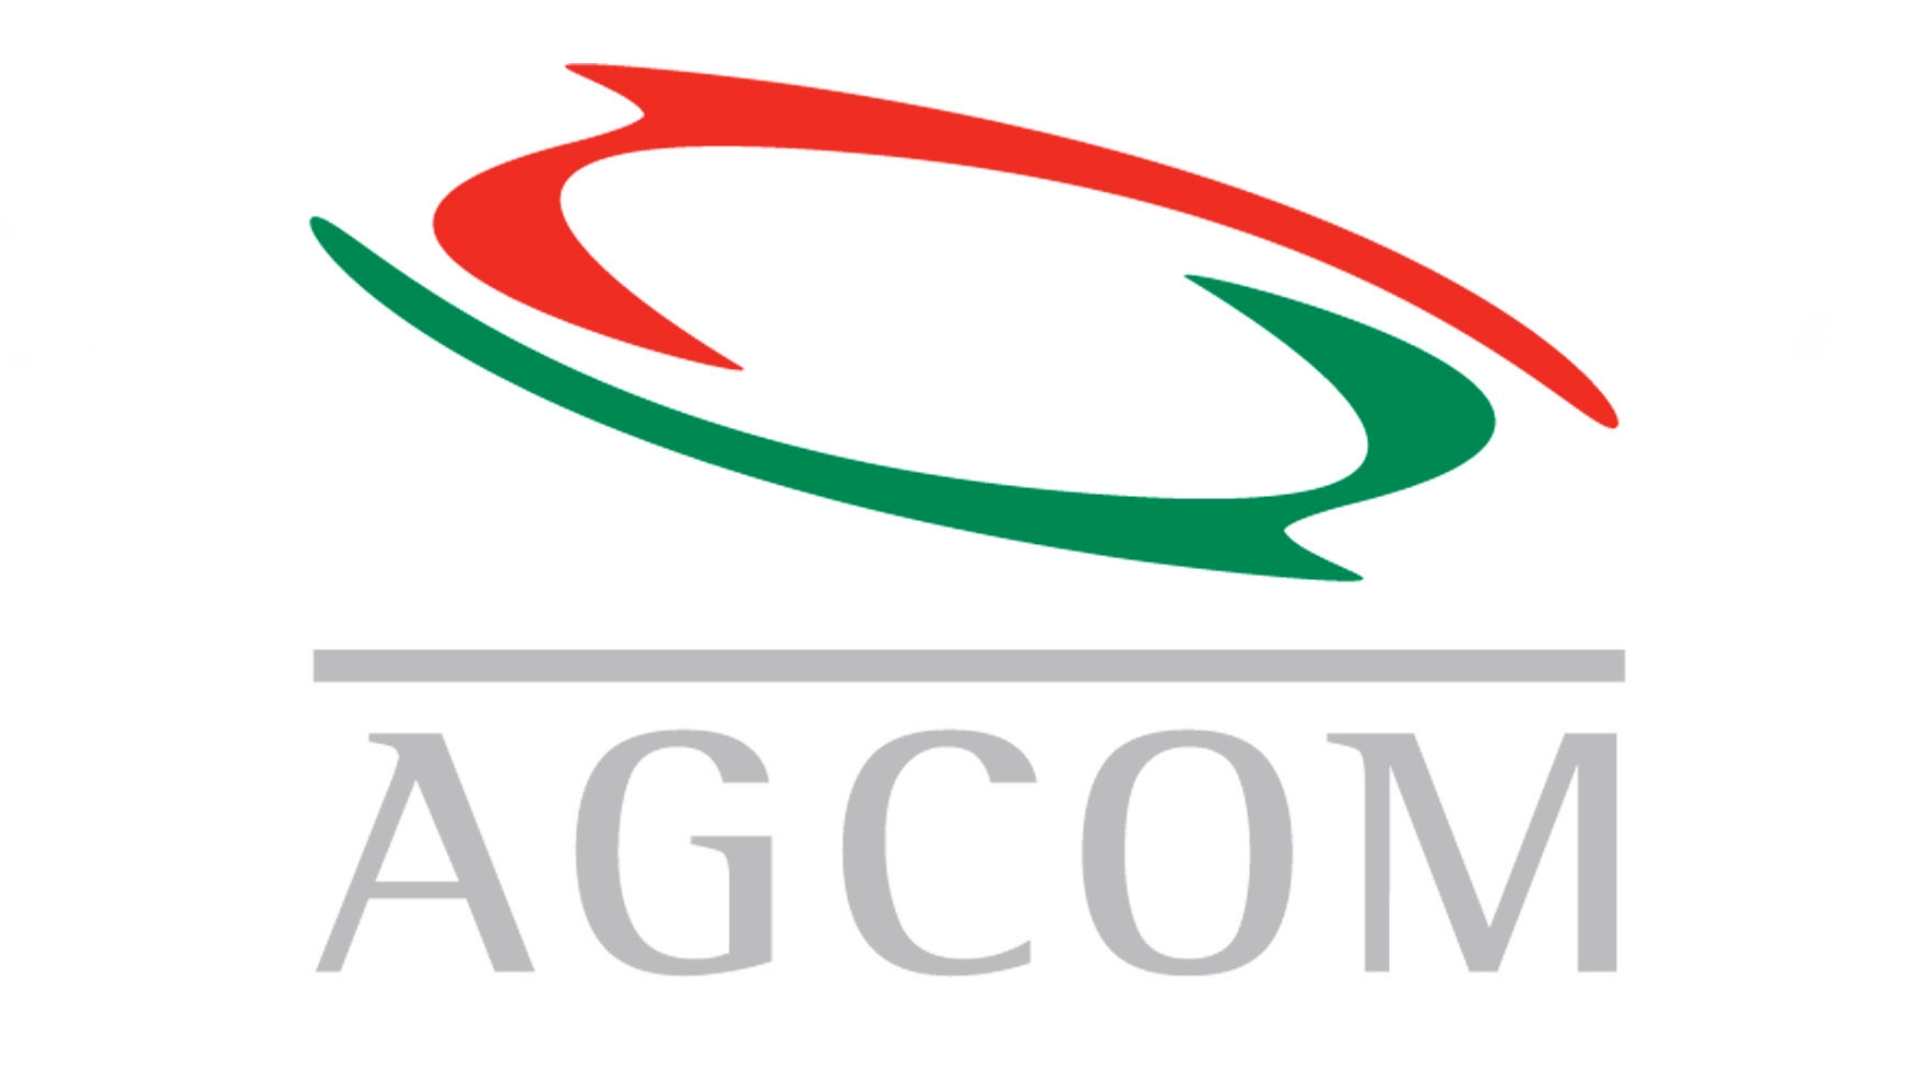 FIAP AGCOM v2